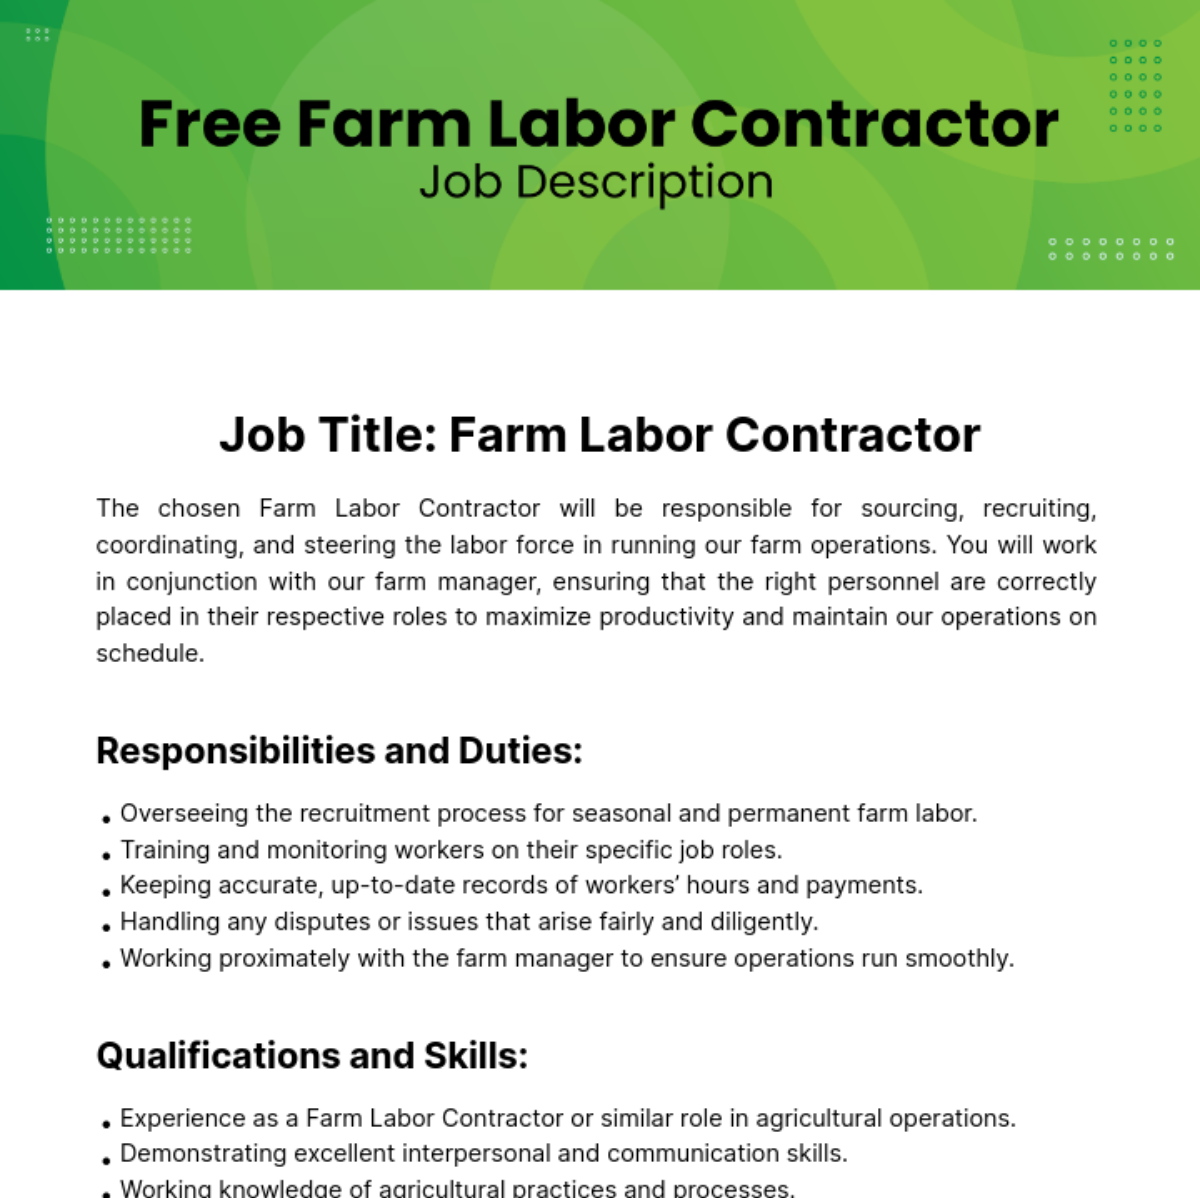 Free Farm Labor Contractor Job Description Template